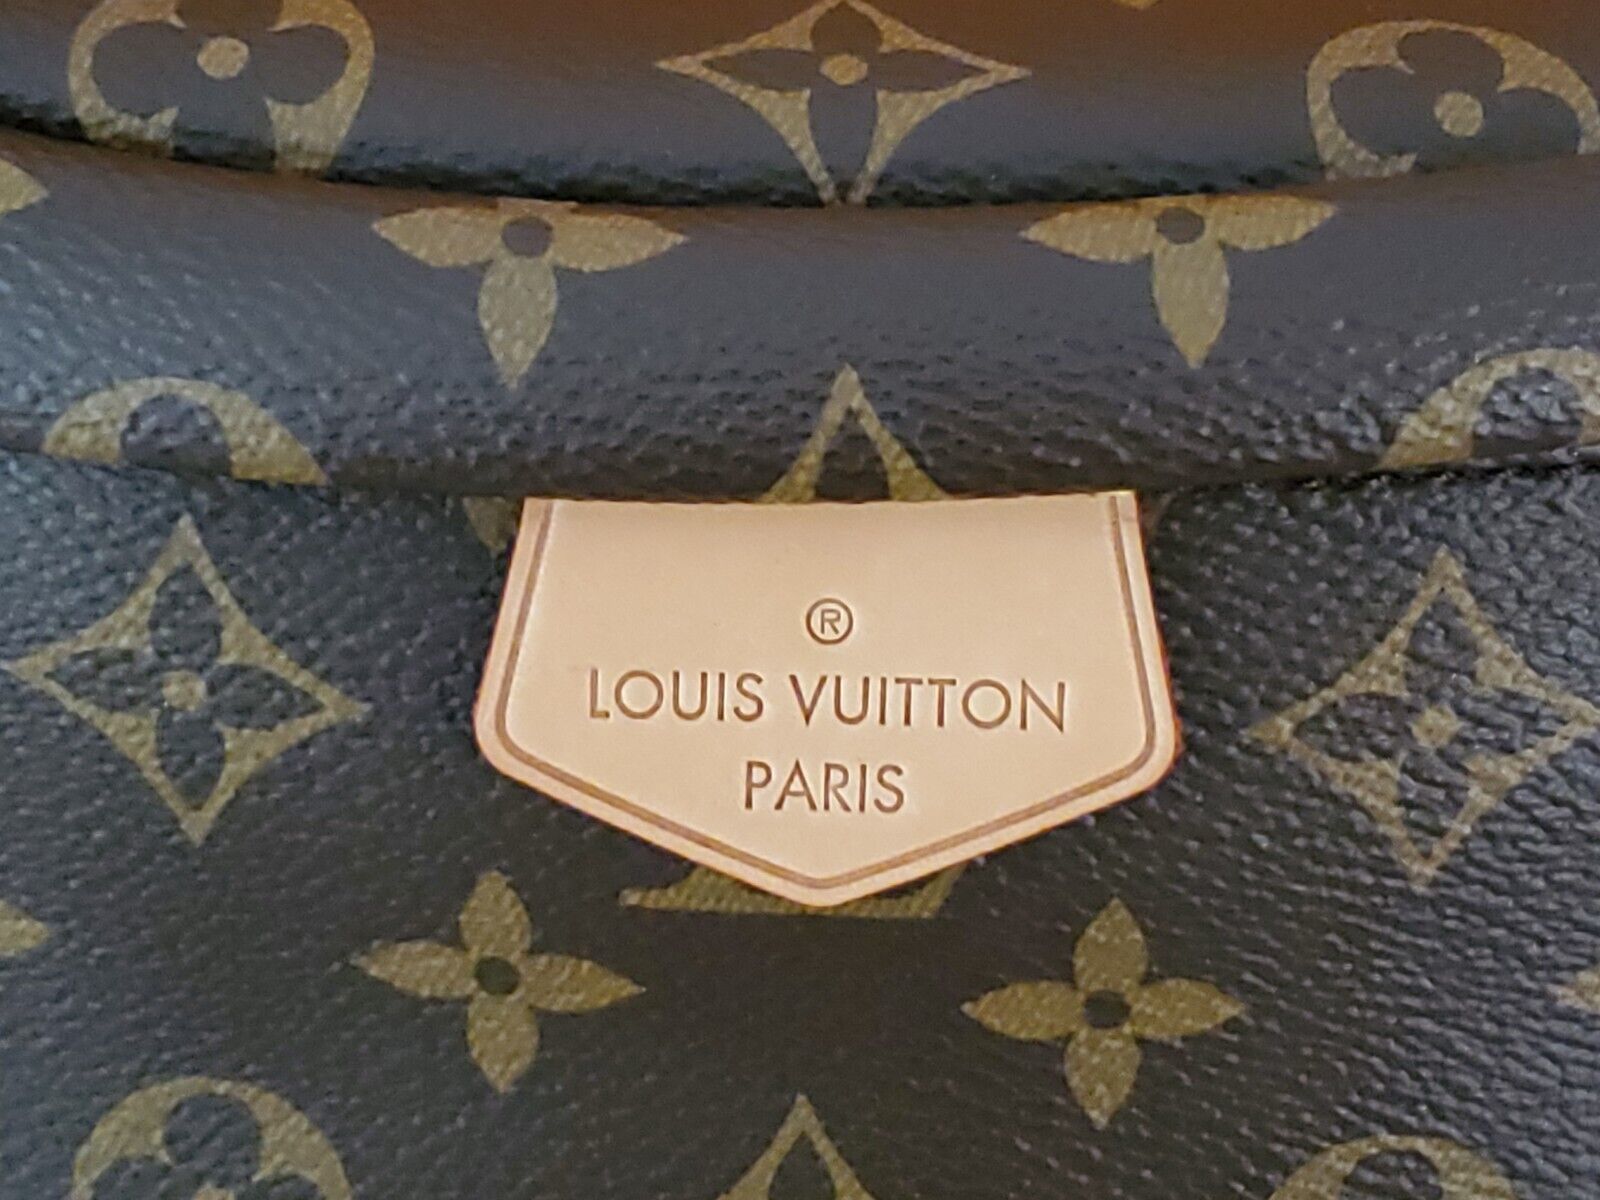 Bum bag / sac ceinture leather weekend bag Louis Vuitton Brown in